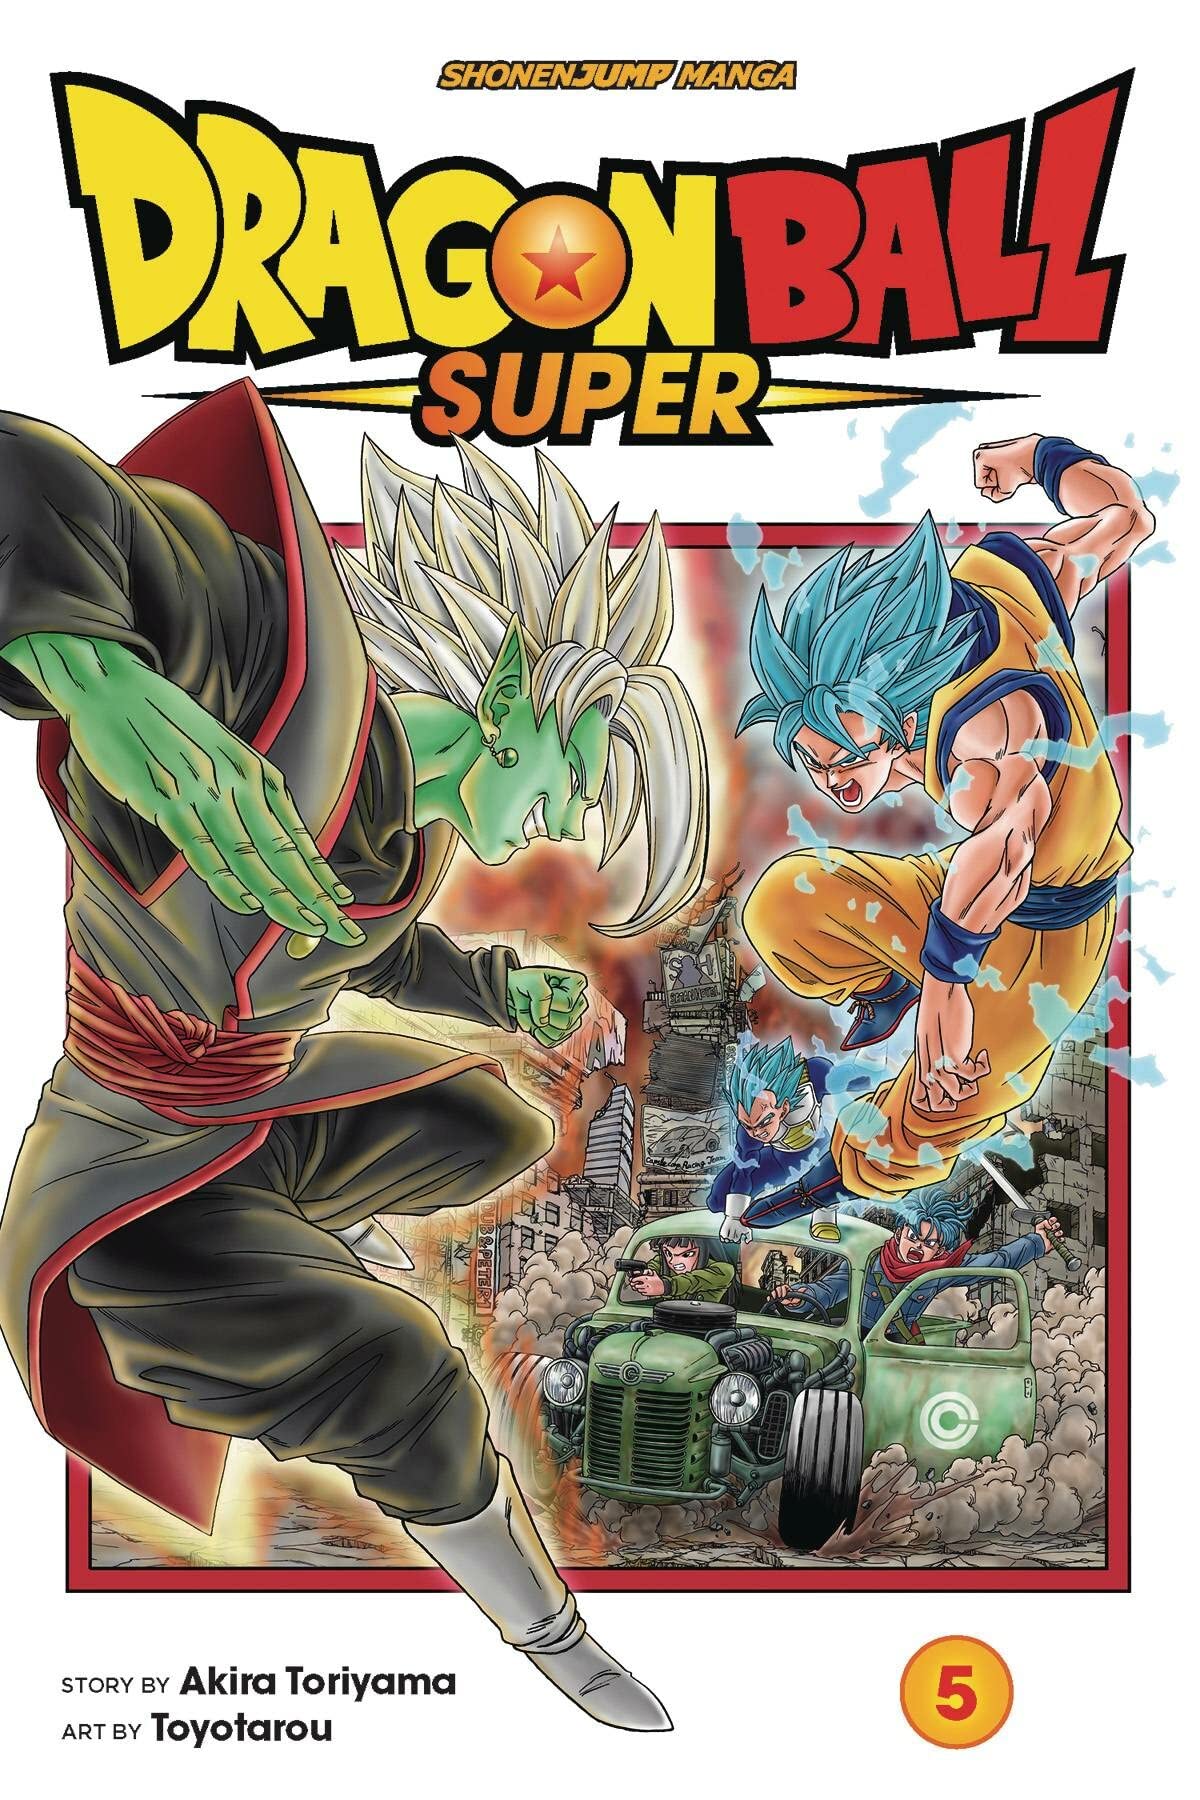 Dragon Ball Super, Vol. 5 (5)